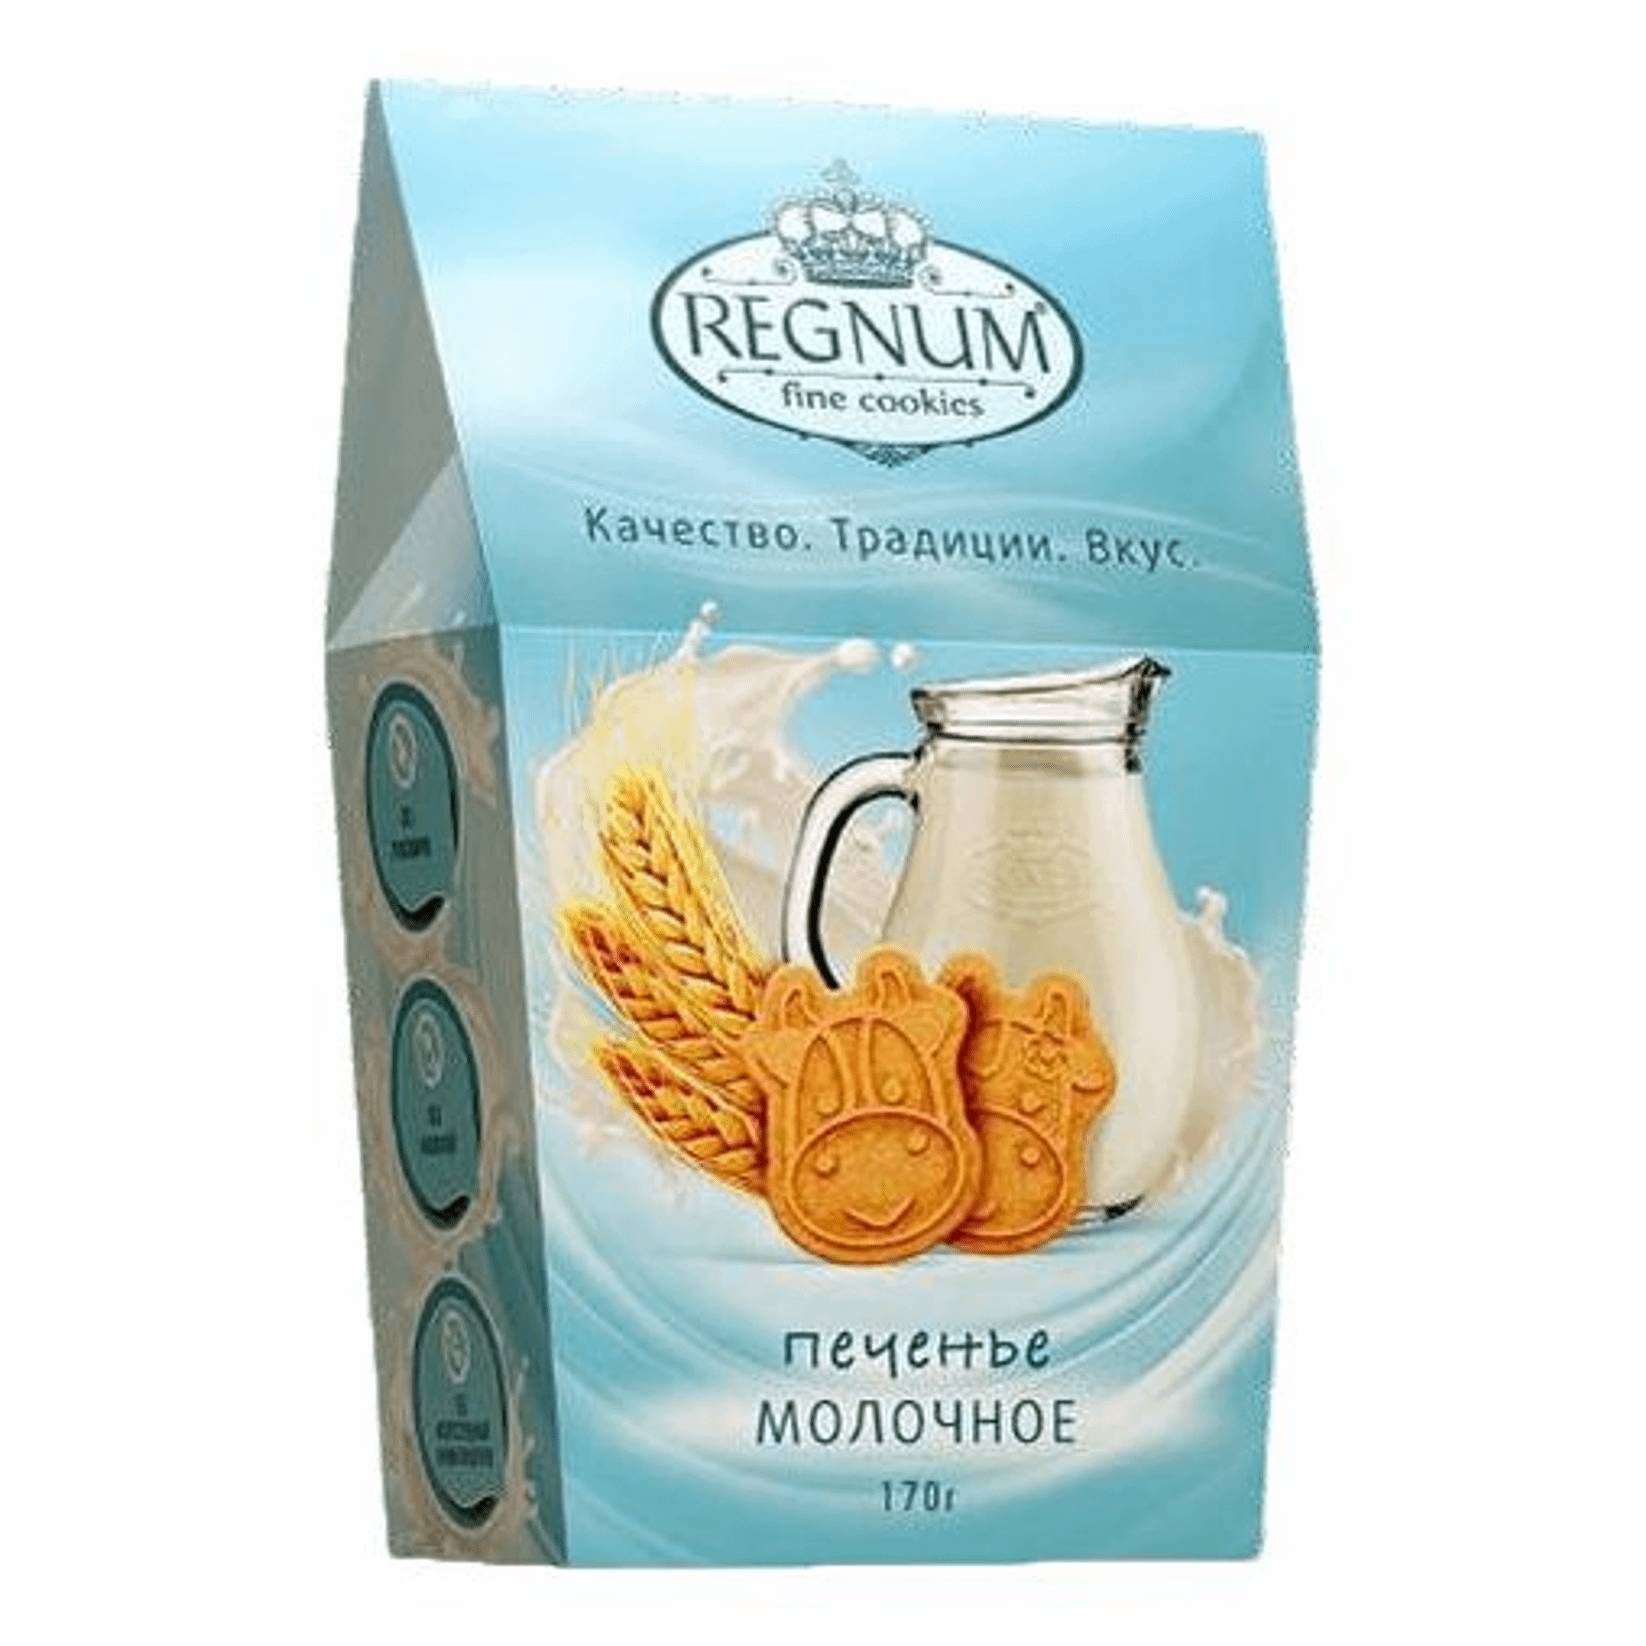 Печенье фигурное Регнум молочное, 170 г печенье юбилейное молочное глазированное 116 гр